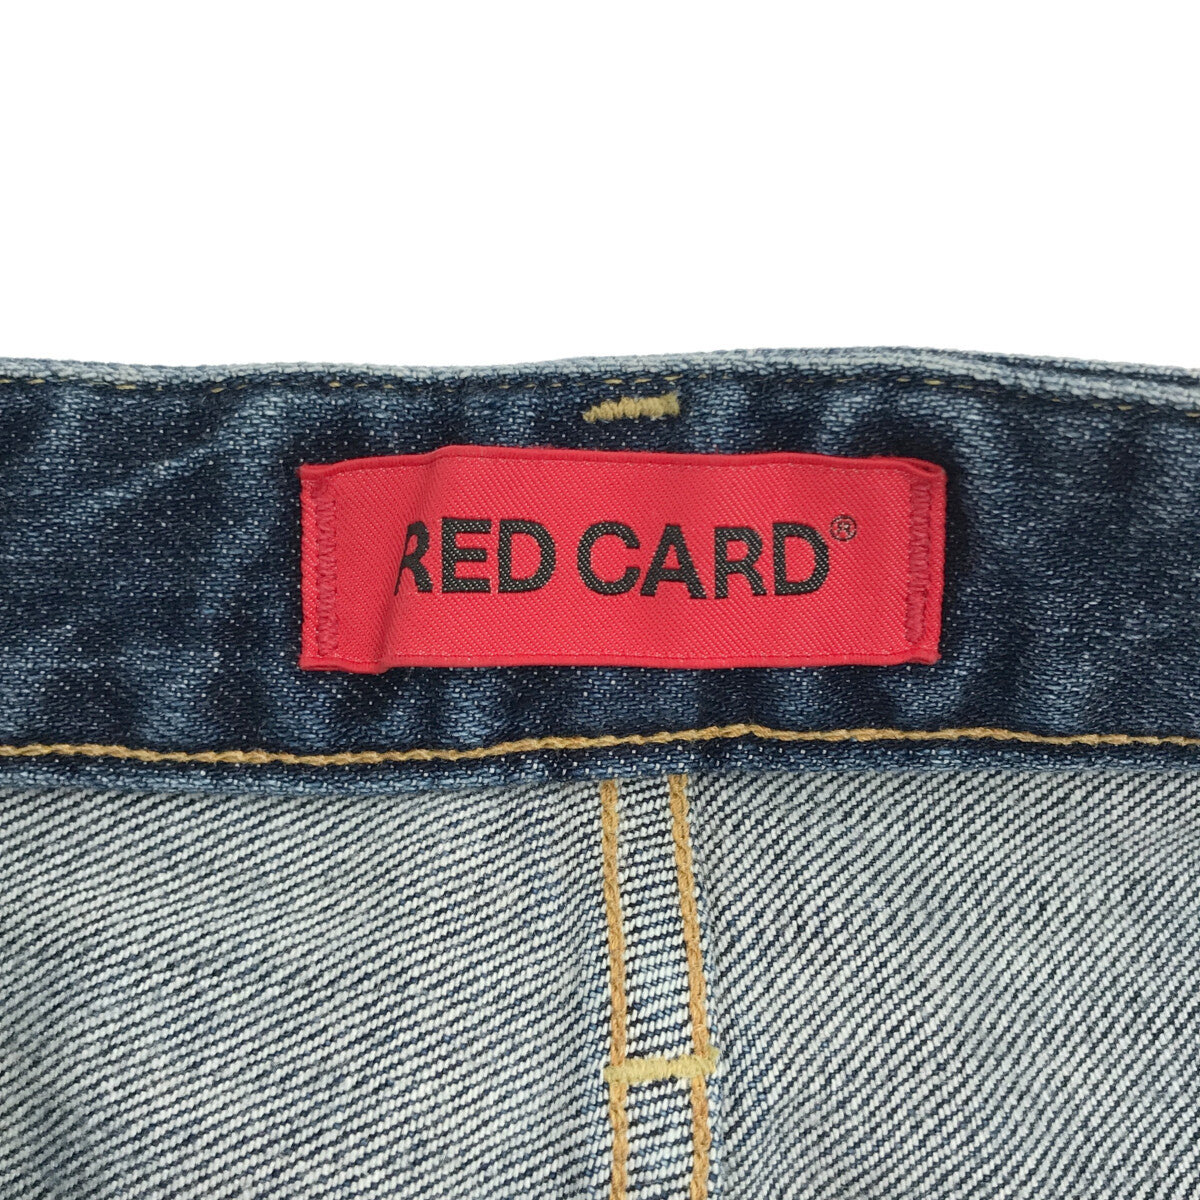 RED CARD / レッドカード | ユーズド加工 ワイドデニムパンツ | 26 | インディゴ | レディース